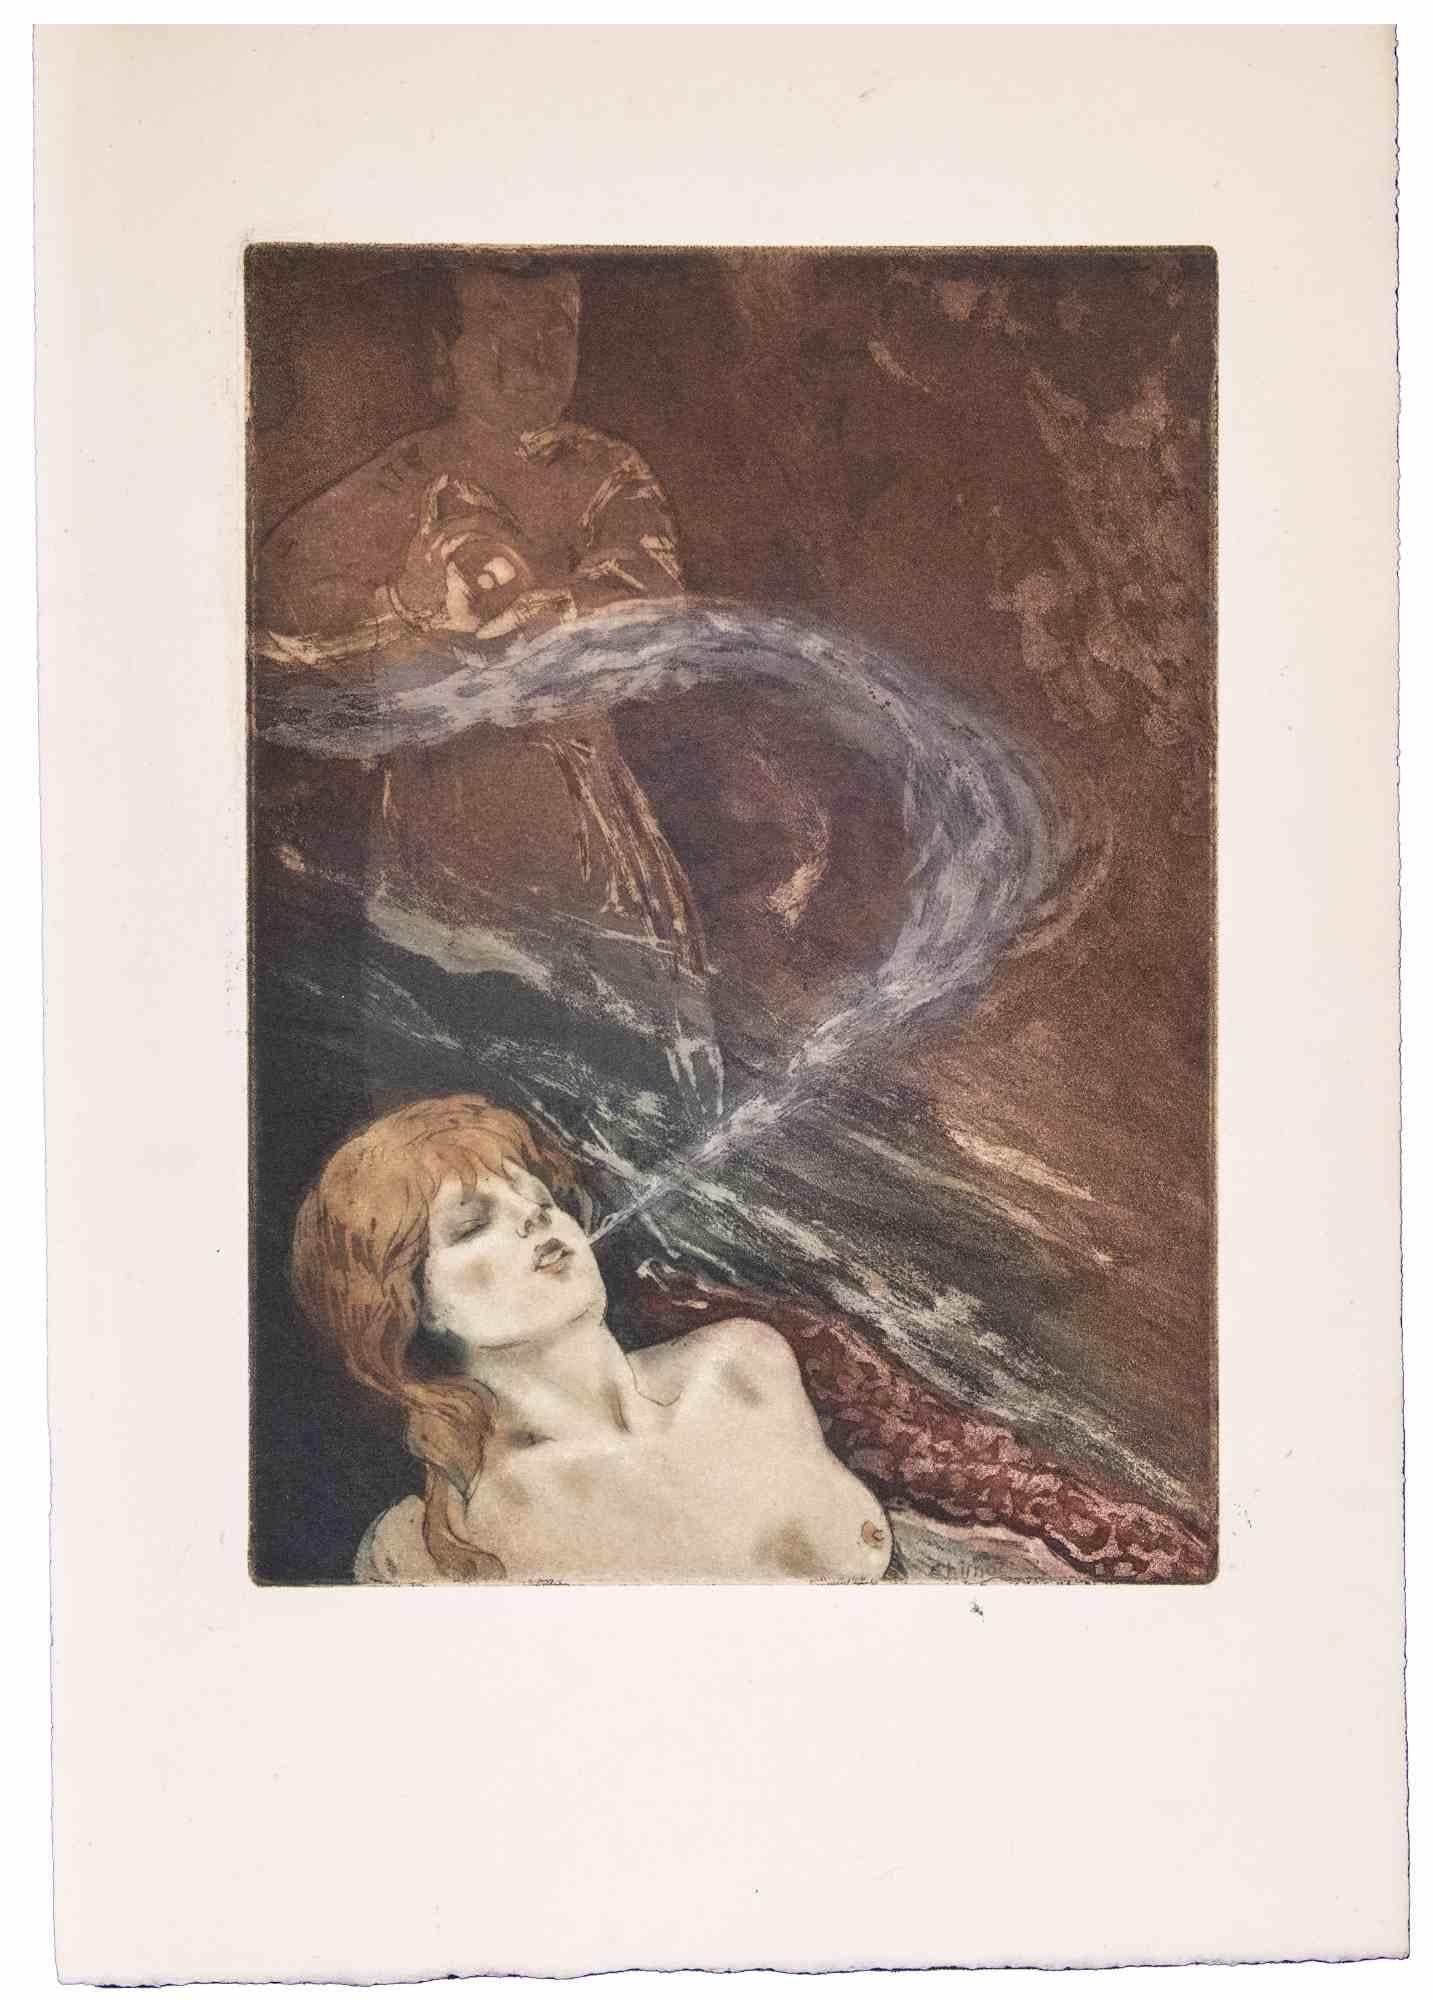 Opium Night ist eine Radierung von Edouard Chimot aus den 1930er Jahren.

Das sehr schöne Kunstwerk ist in gutem Zustand.

Keine Unterschrift.

Stellt eine junge Frau mit roten Haaren dar, die raucht.

Édouard Chimot (26. November 1880 - 7. Juni